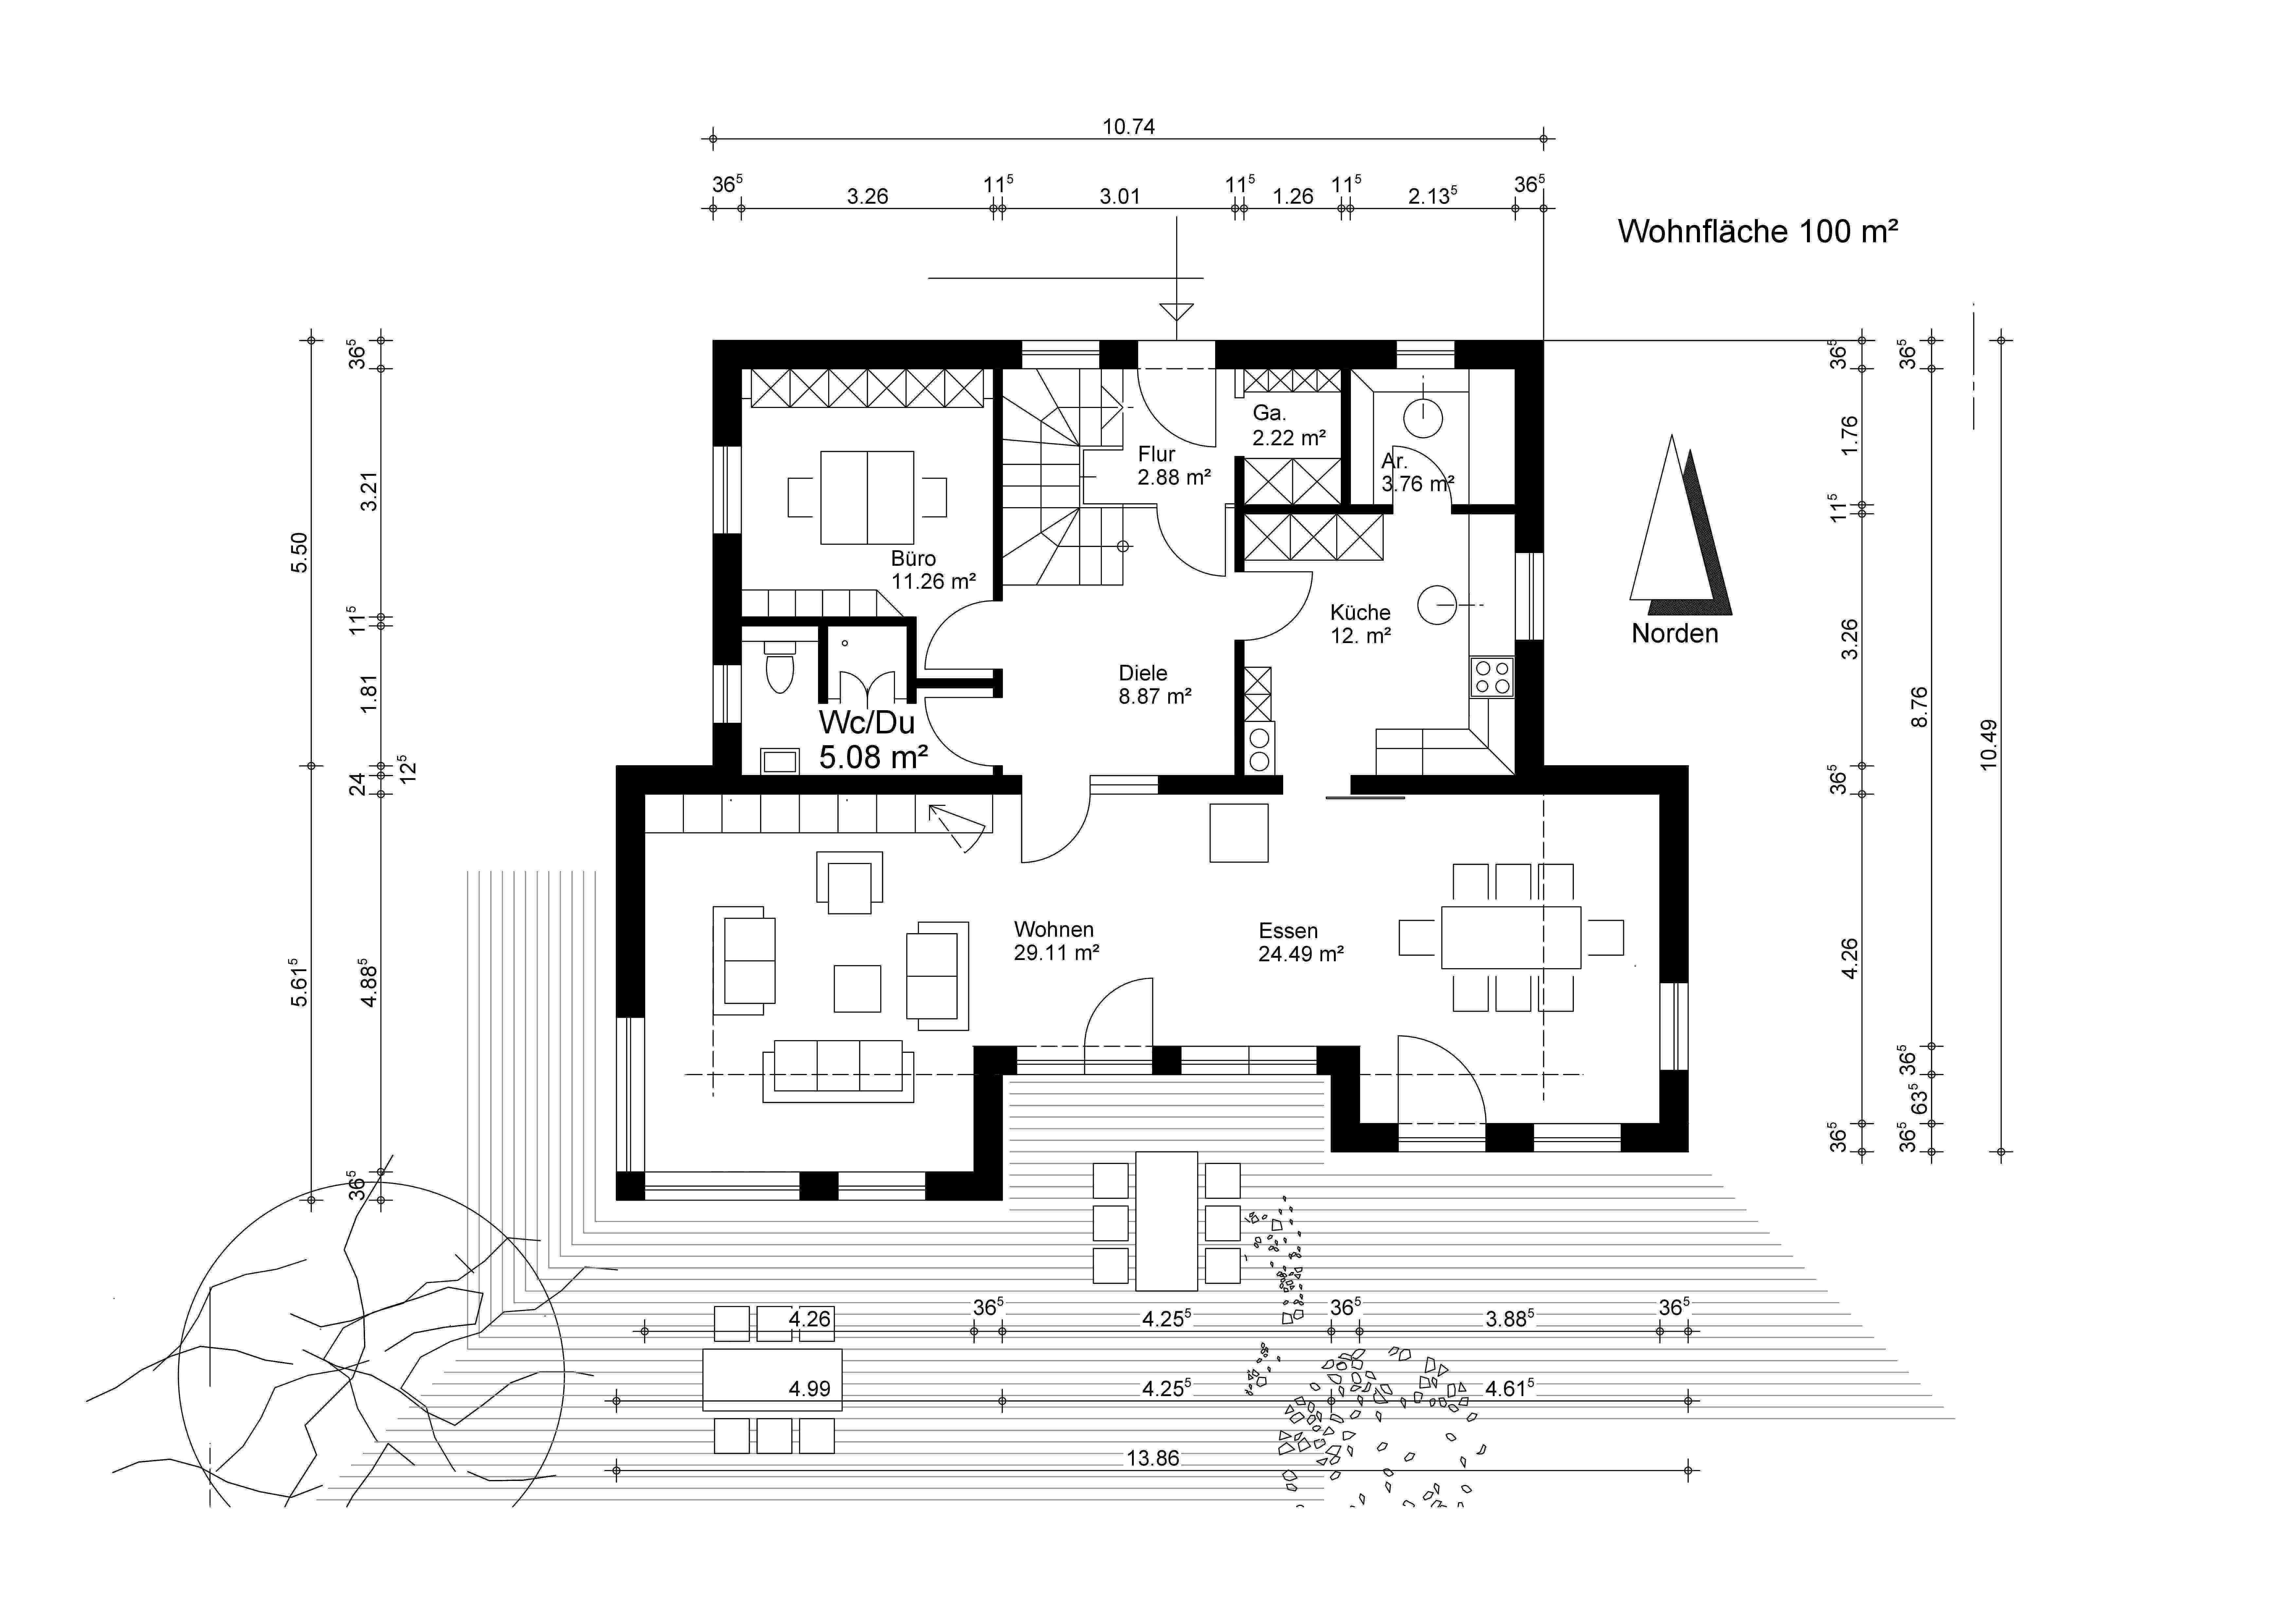 erster-grundrissentwurf-unseres-architekten-meinungen-90629-3.jpg